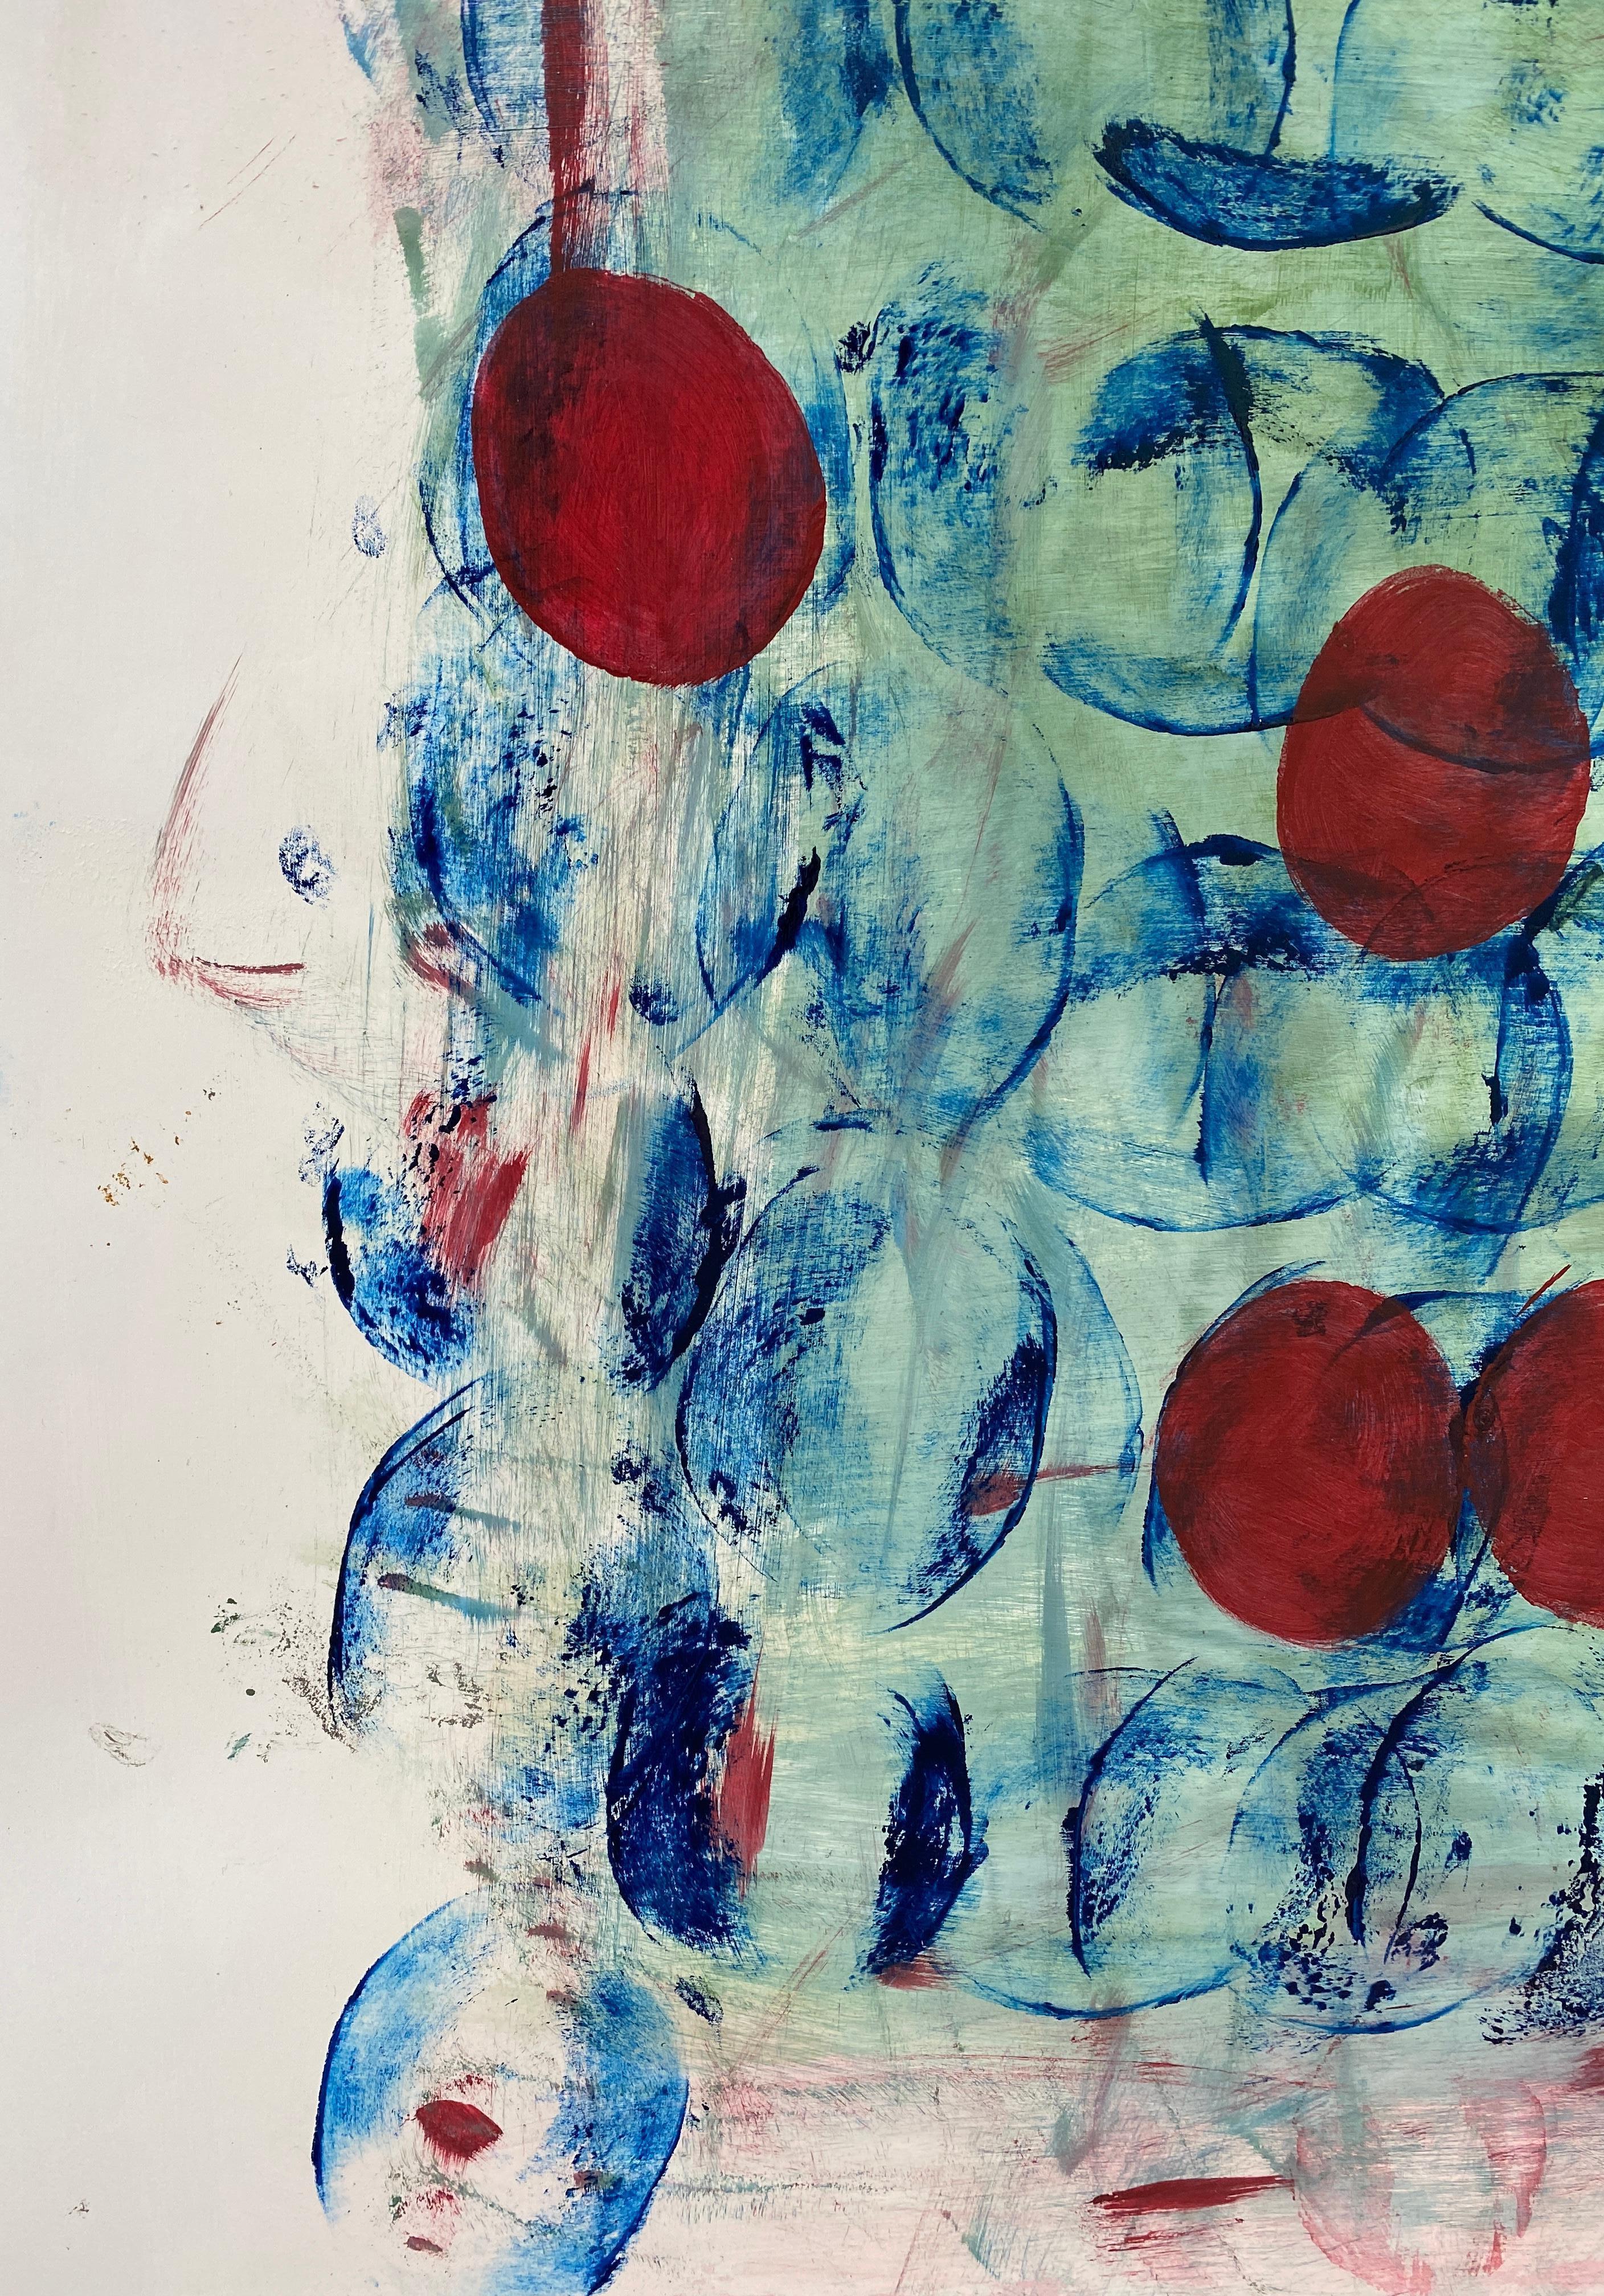 Cette peinture abstraite de bleus et de rouges sur papier a une touche océanique.  L'image d'un poisson est révélée sur le côté gauche du tableau.  Les cercles représentent le cycle des saisons.  Mon objectif était de procurer au spectateur un